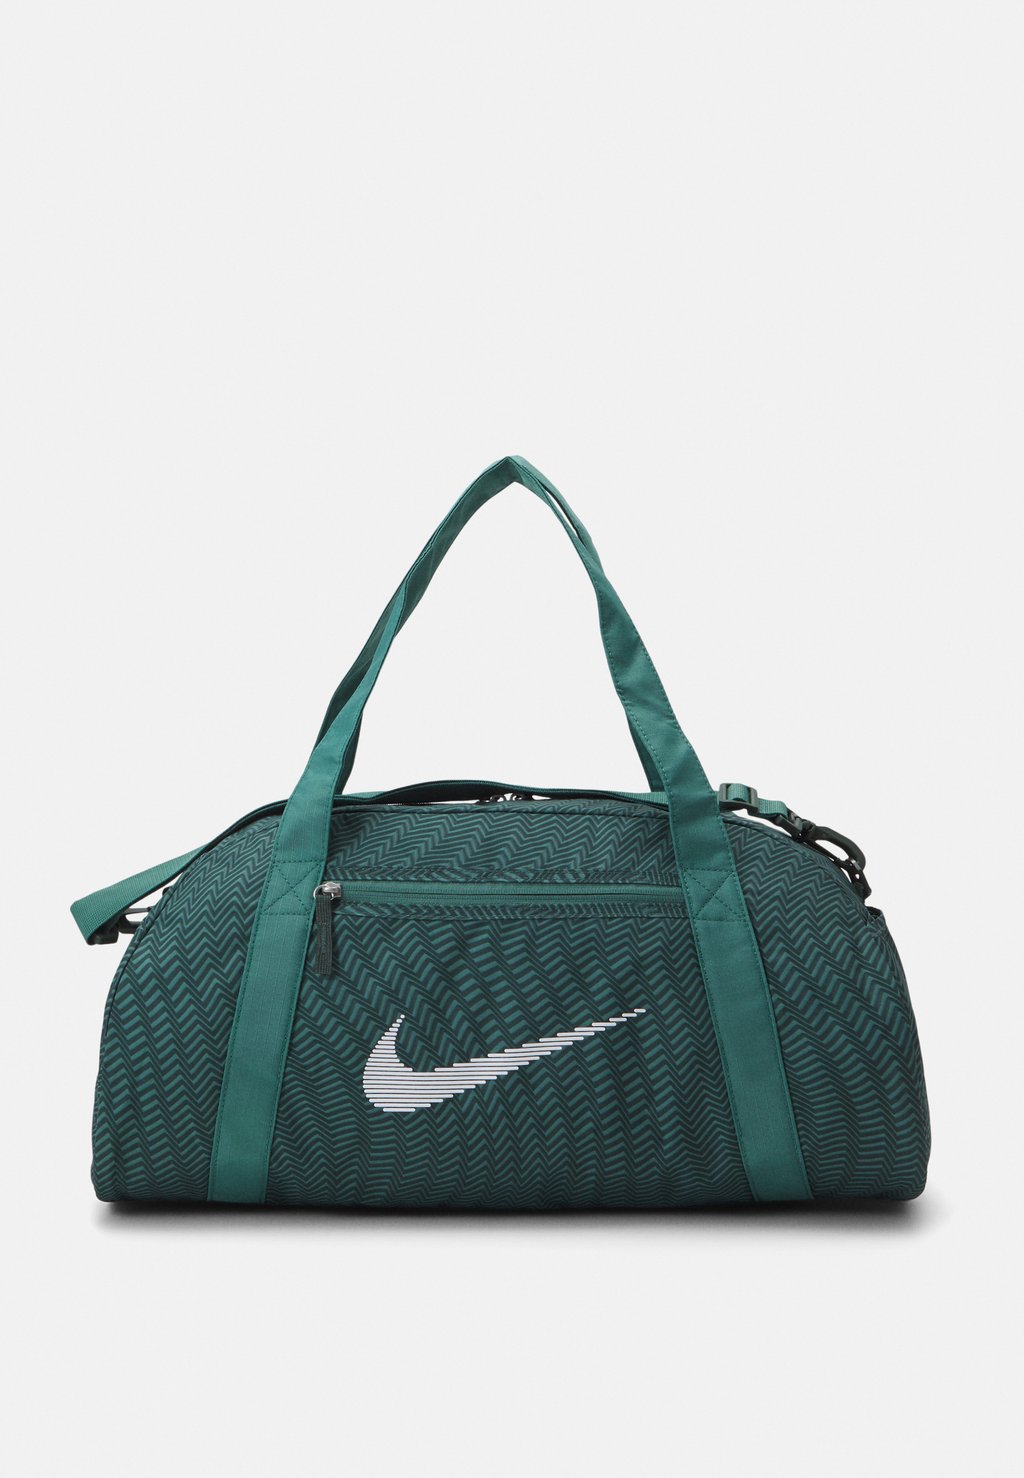 Спортивная сумка GYM CLUB Nike, цвет vintage green/bicoastal/white спортивная сумка nike performance gym club retro unisex черный зеленый бежевый